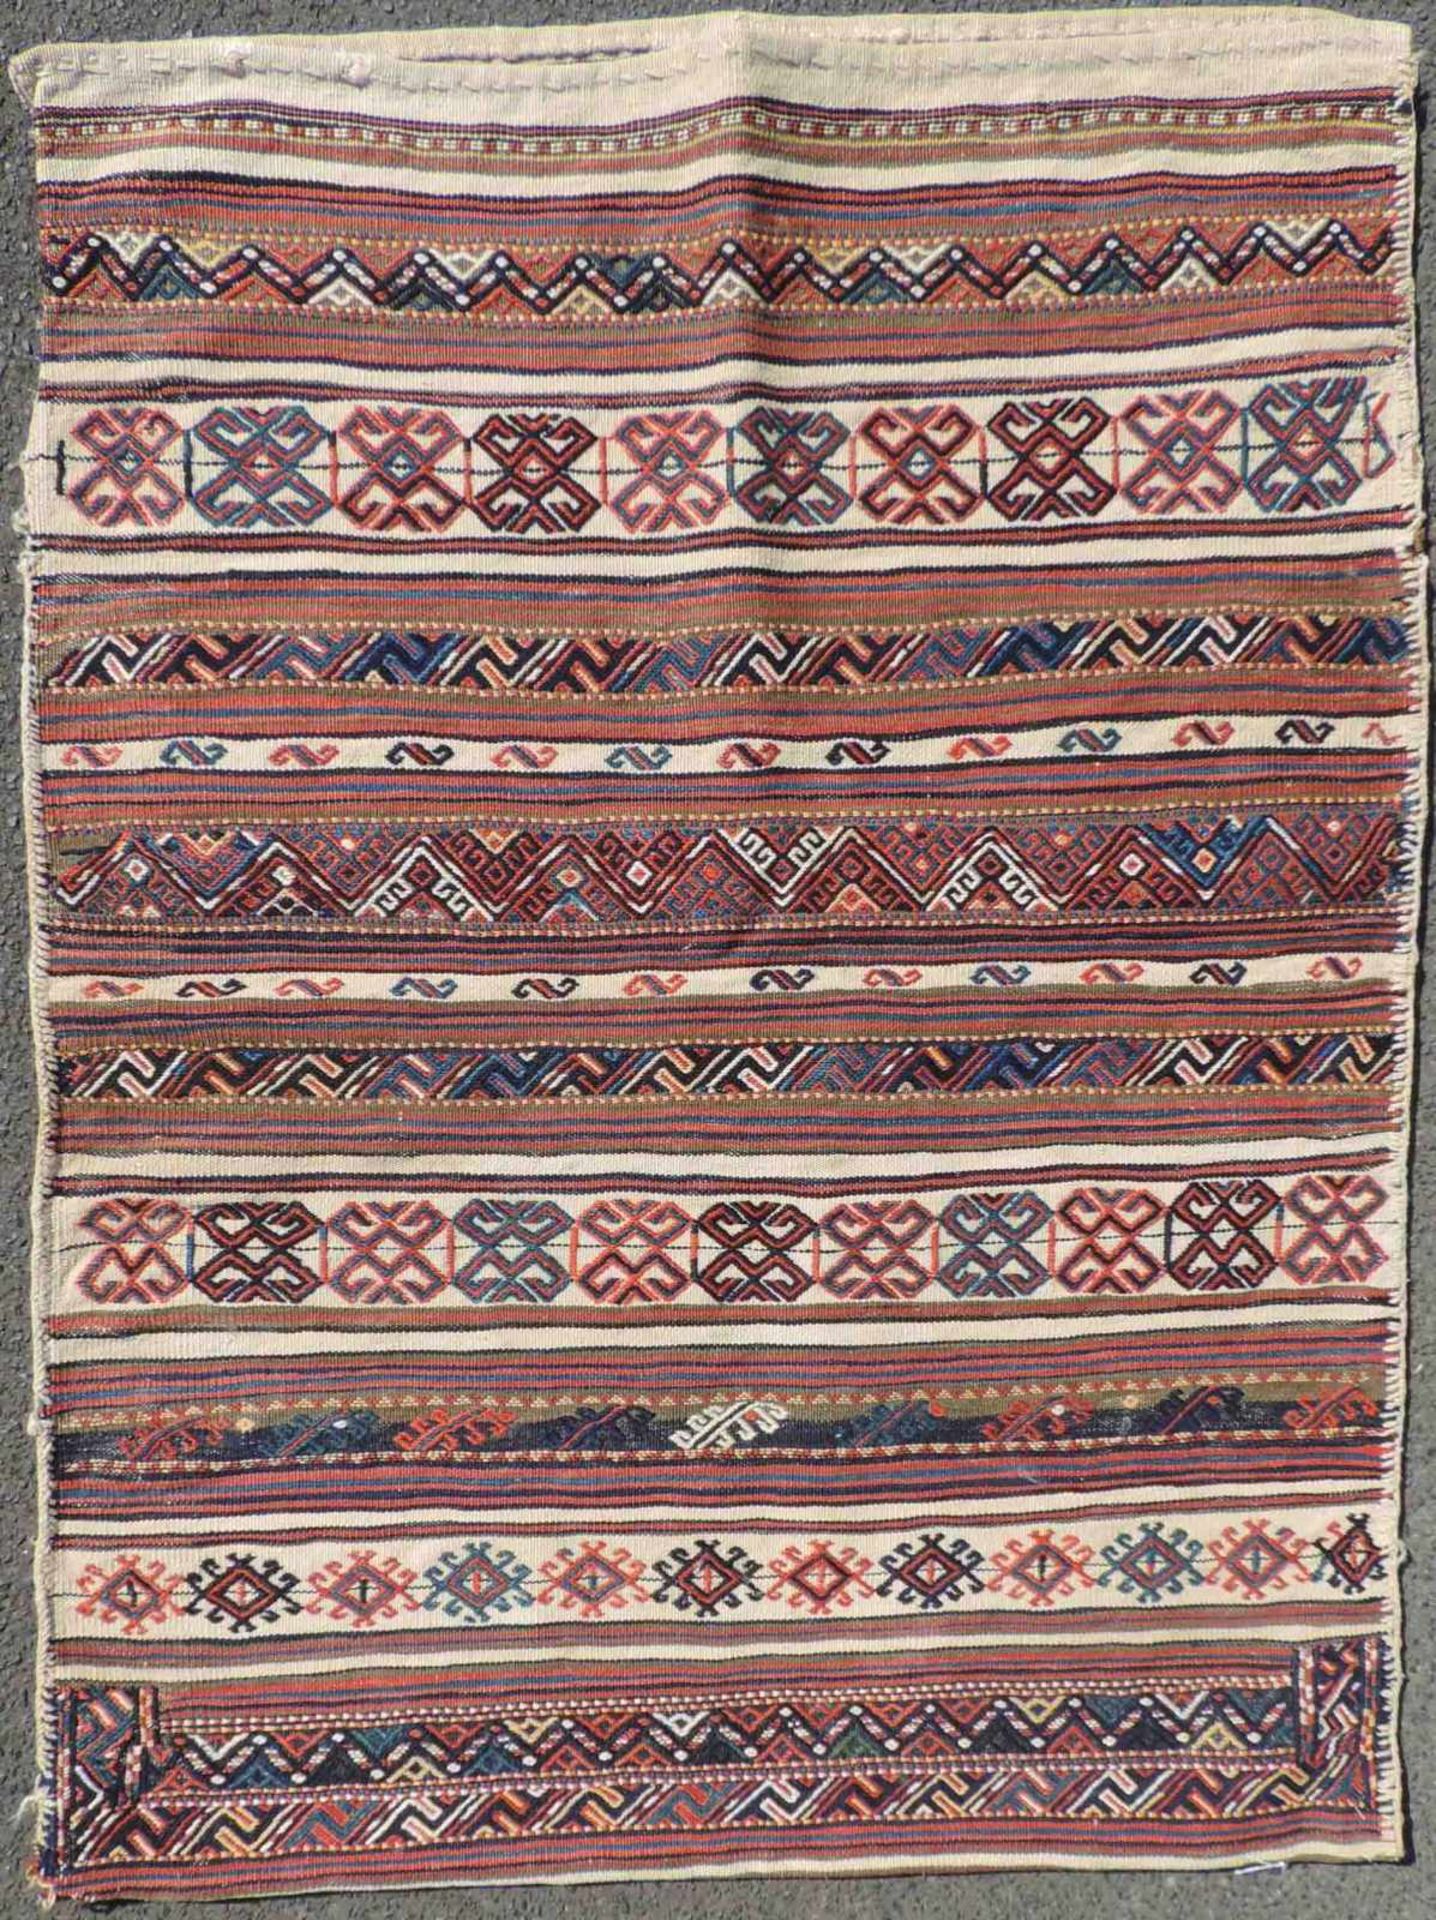 Schasavan Sack. Iran, antik, um 1900. 107 cm x 82 cm. Handgewebt. Wolle auf Wolle. Mustereinträge in